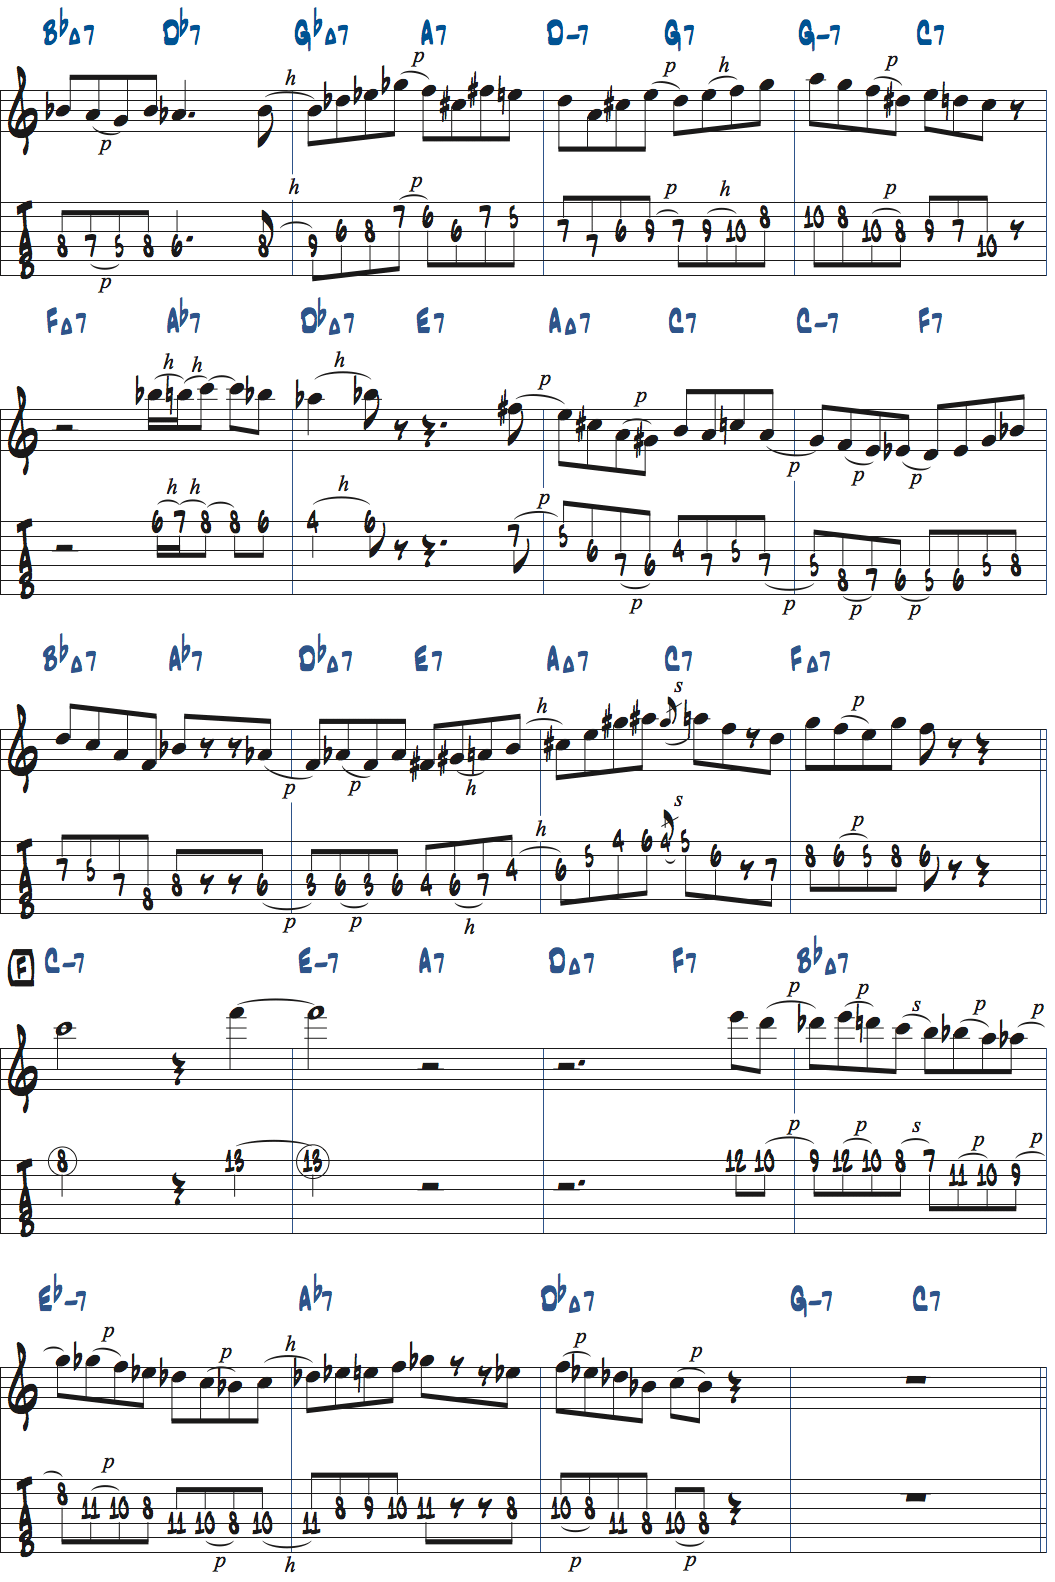 カート・ローゼンウィンケル「26-2」アドリブ1コラース目タブ譜付きギタースコア楽譜ページ2